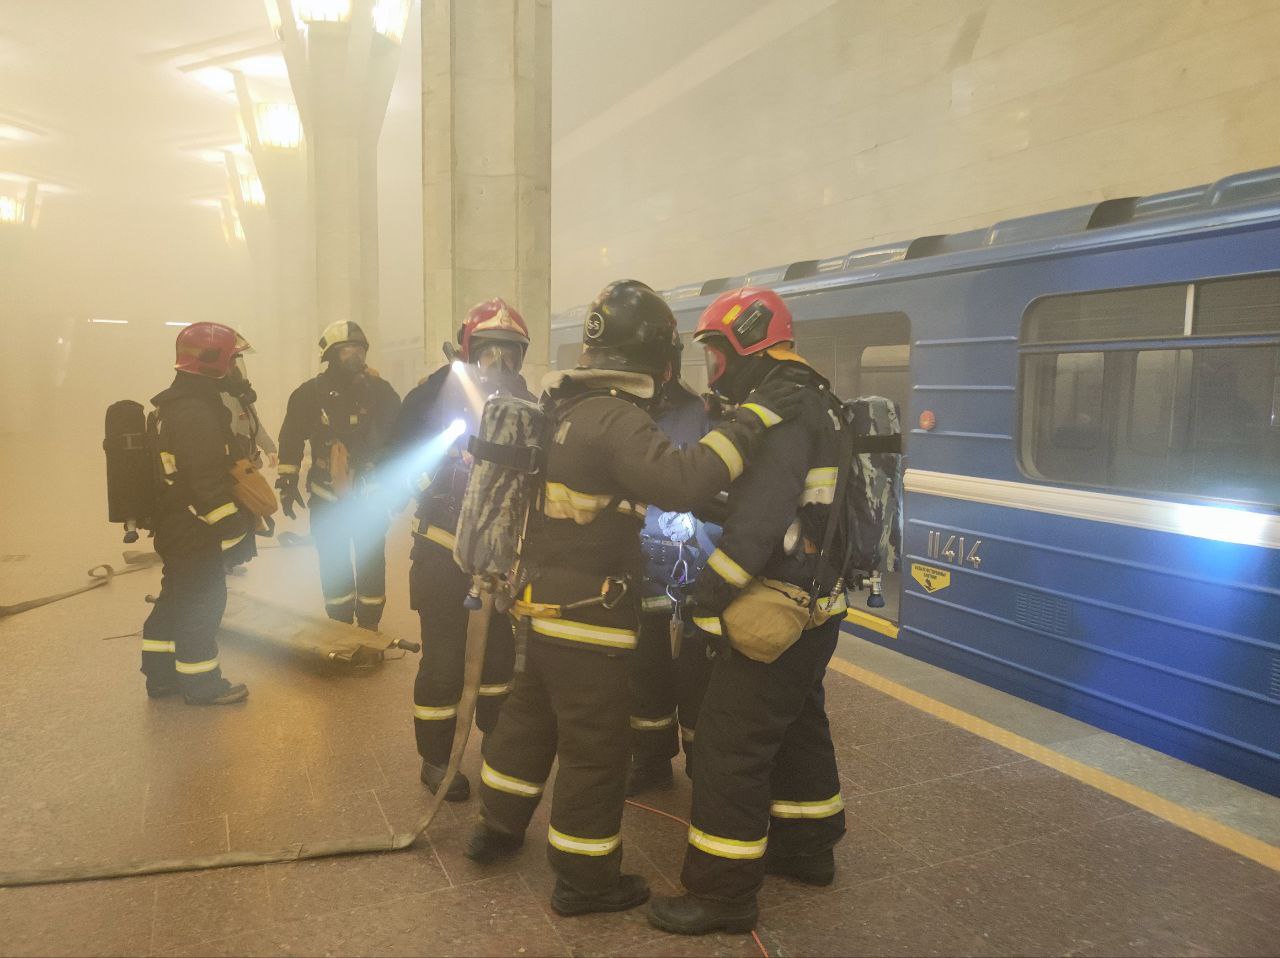 Загорелись два вагона метро. МЧС провело учение на станции "Октябрьская"